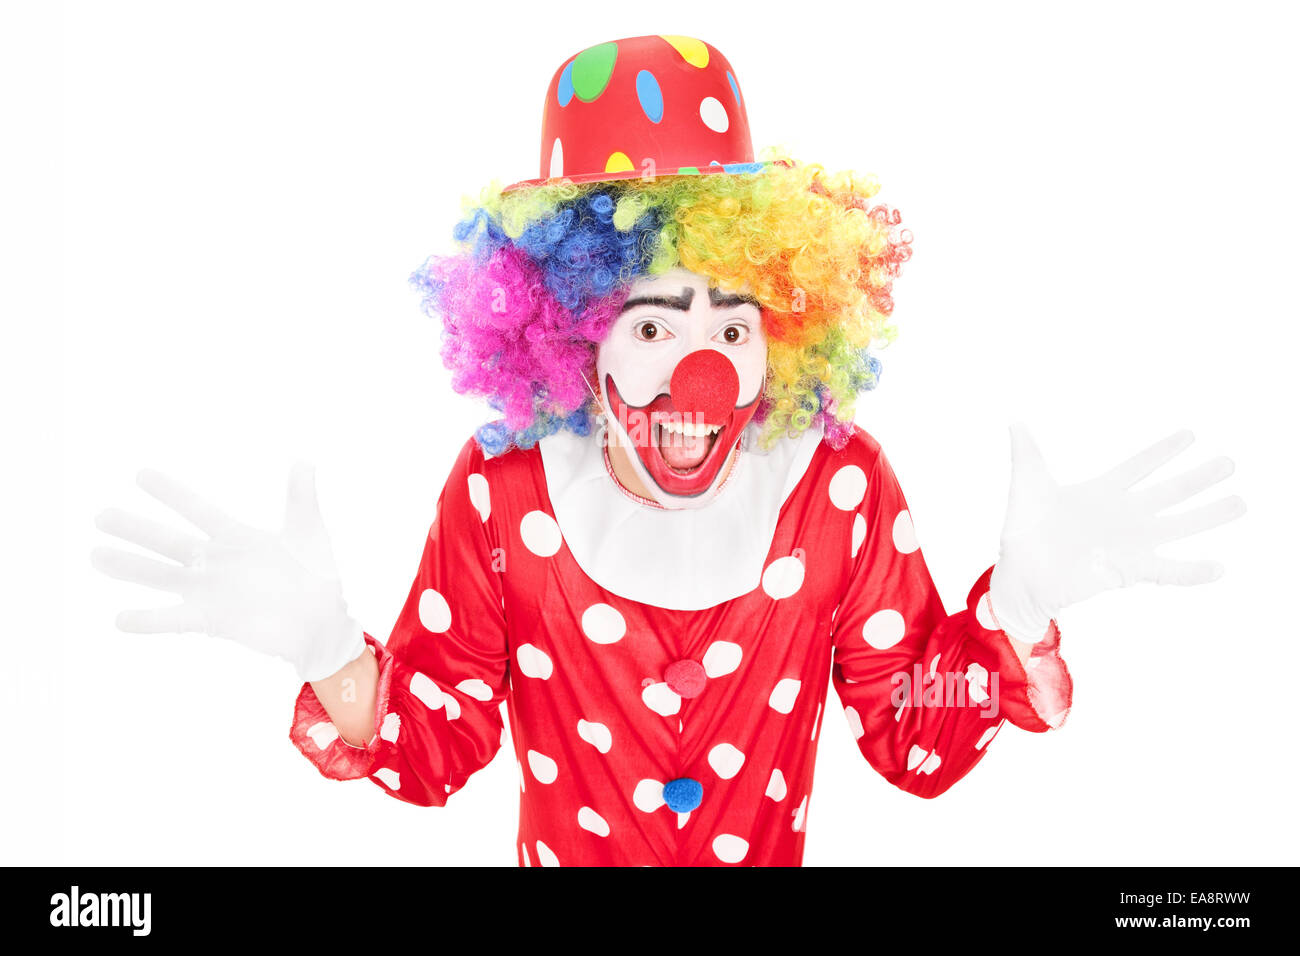 Мужик клоун. Жест клоуна. Клоун показывает рукой. Жест руками клоун. Исованый клоун показывает рукой на белом фоне.